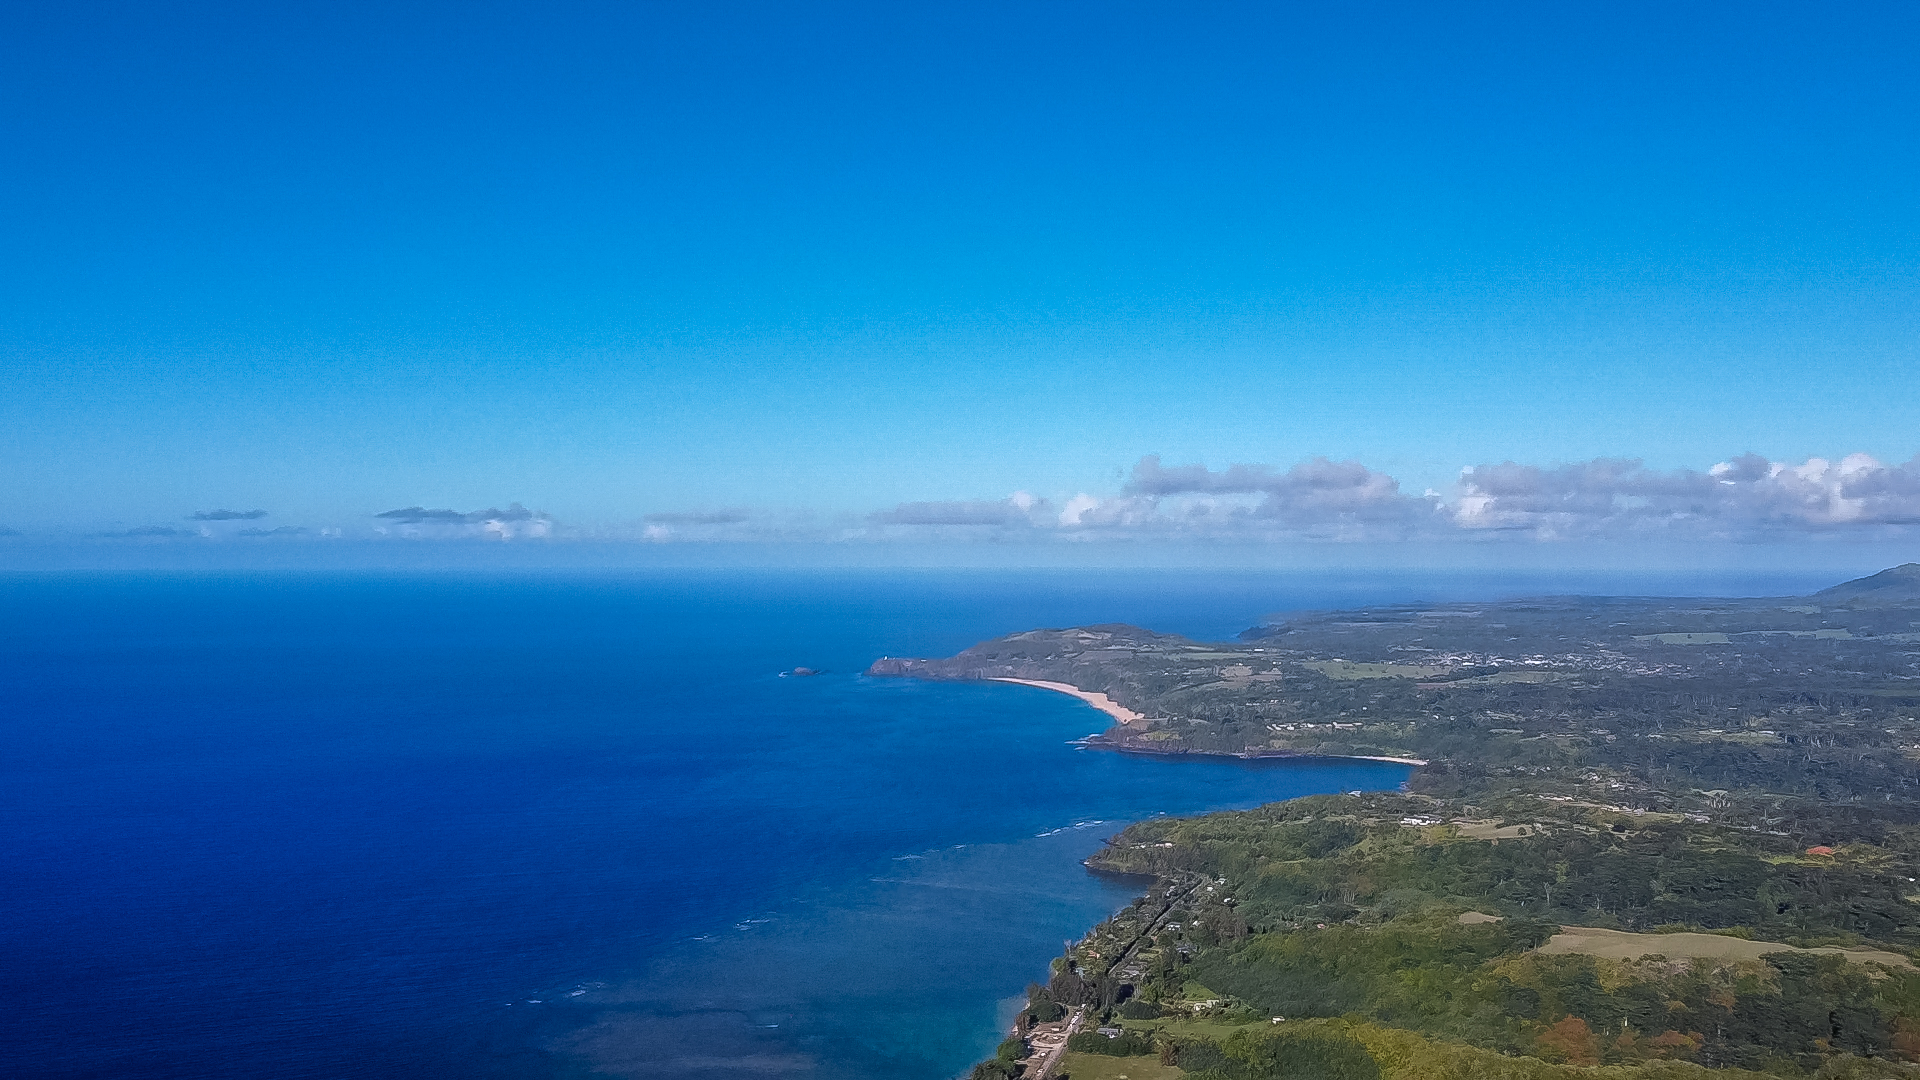 太平洋上的度假天堂,夏威夷可爱岛,悬崖跳水,太好玩了